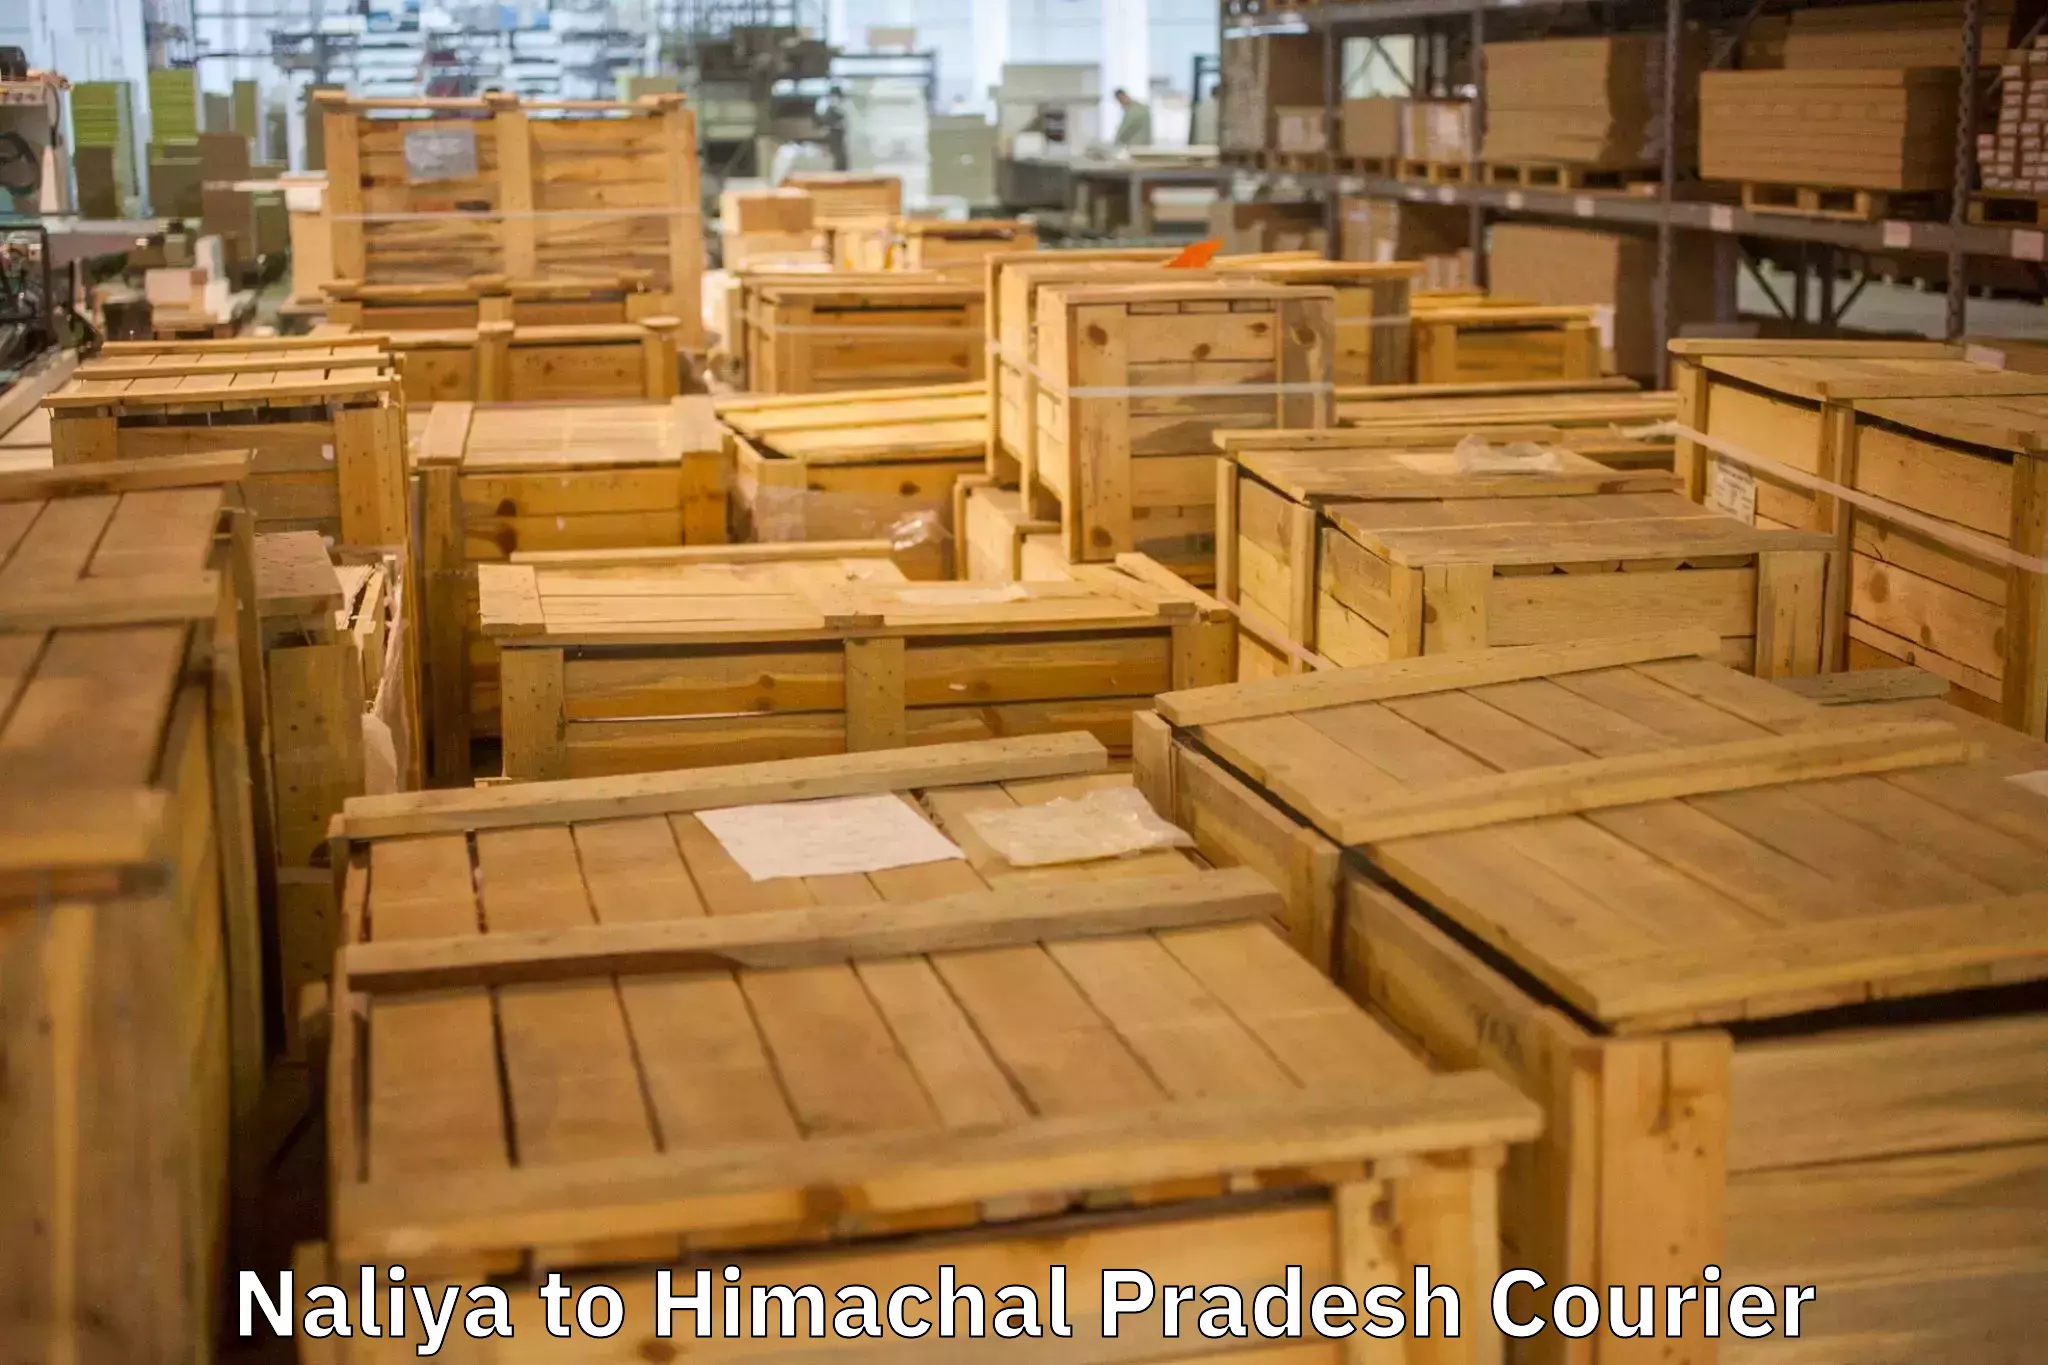 Full-service furniture transport Naliya to Himachal Pradesh